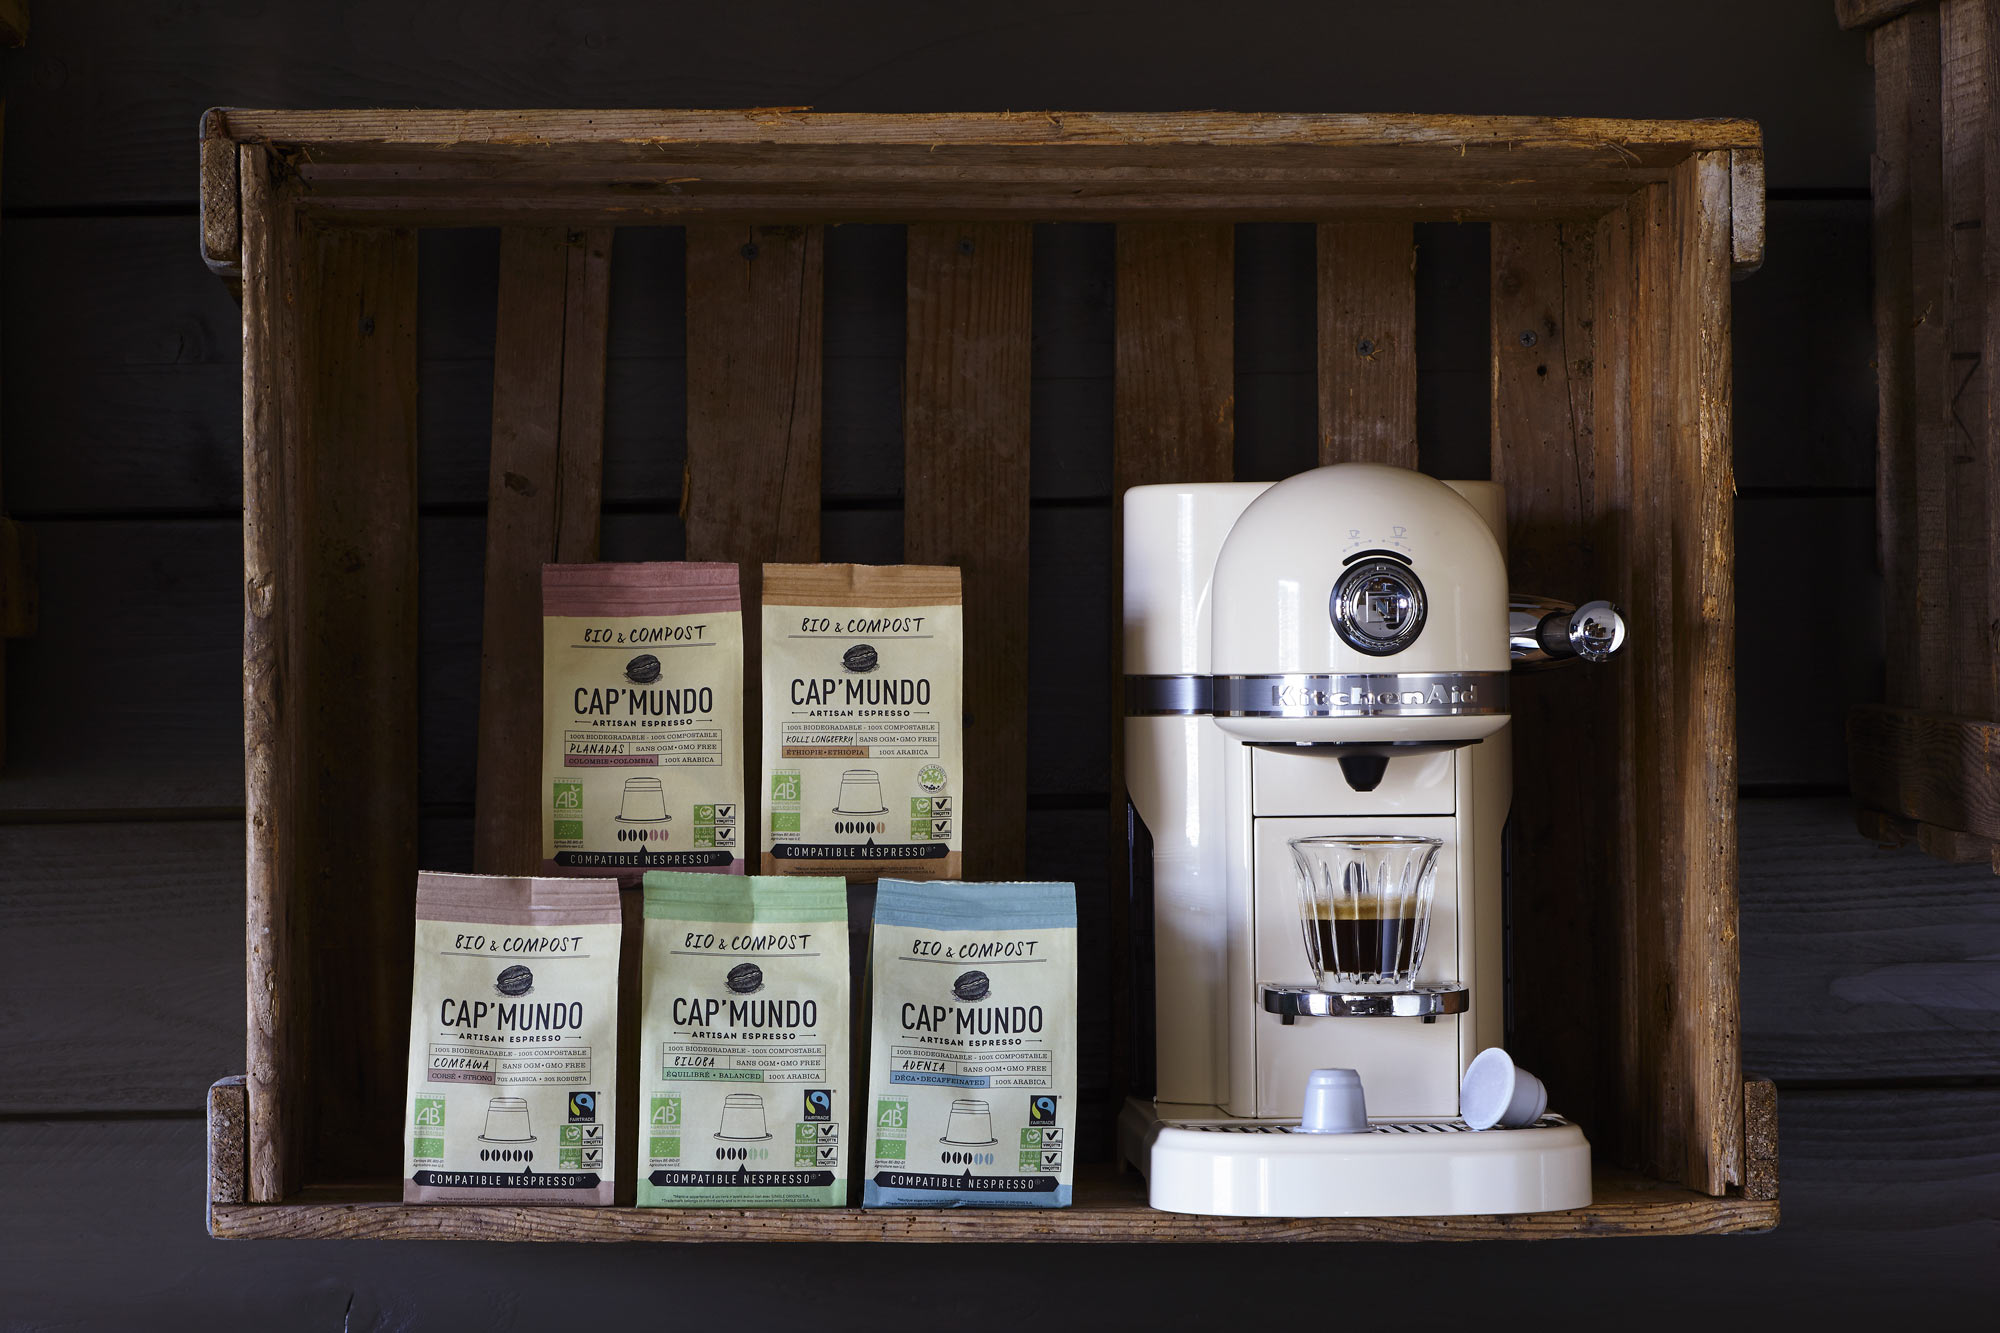 Fin 2015 : Lancement de Cap’Mundo Bio&Compost. Une capsule avec son opercule 100% Biodégradable et compostable avec du café certifié agriculture biologique et Fairtrade.